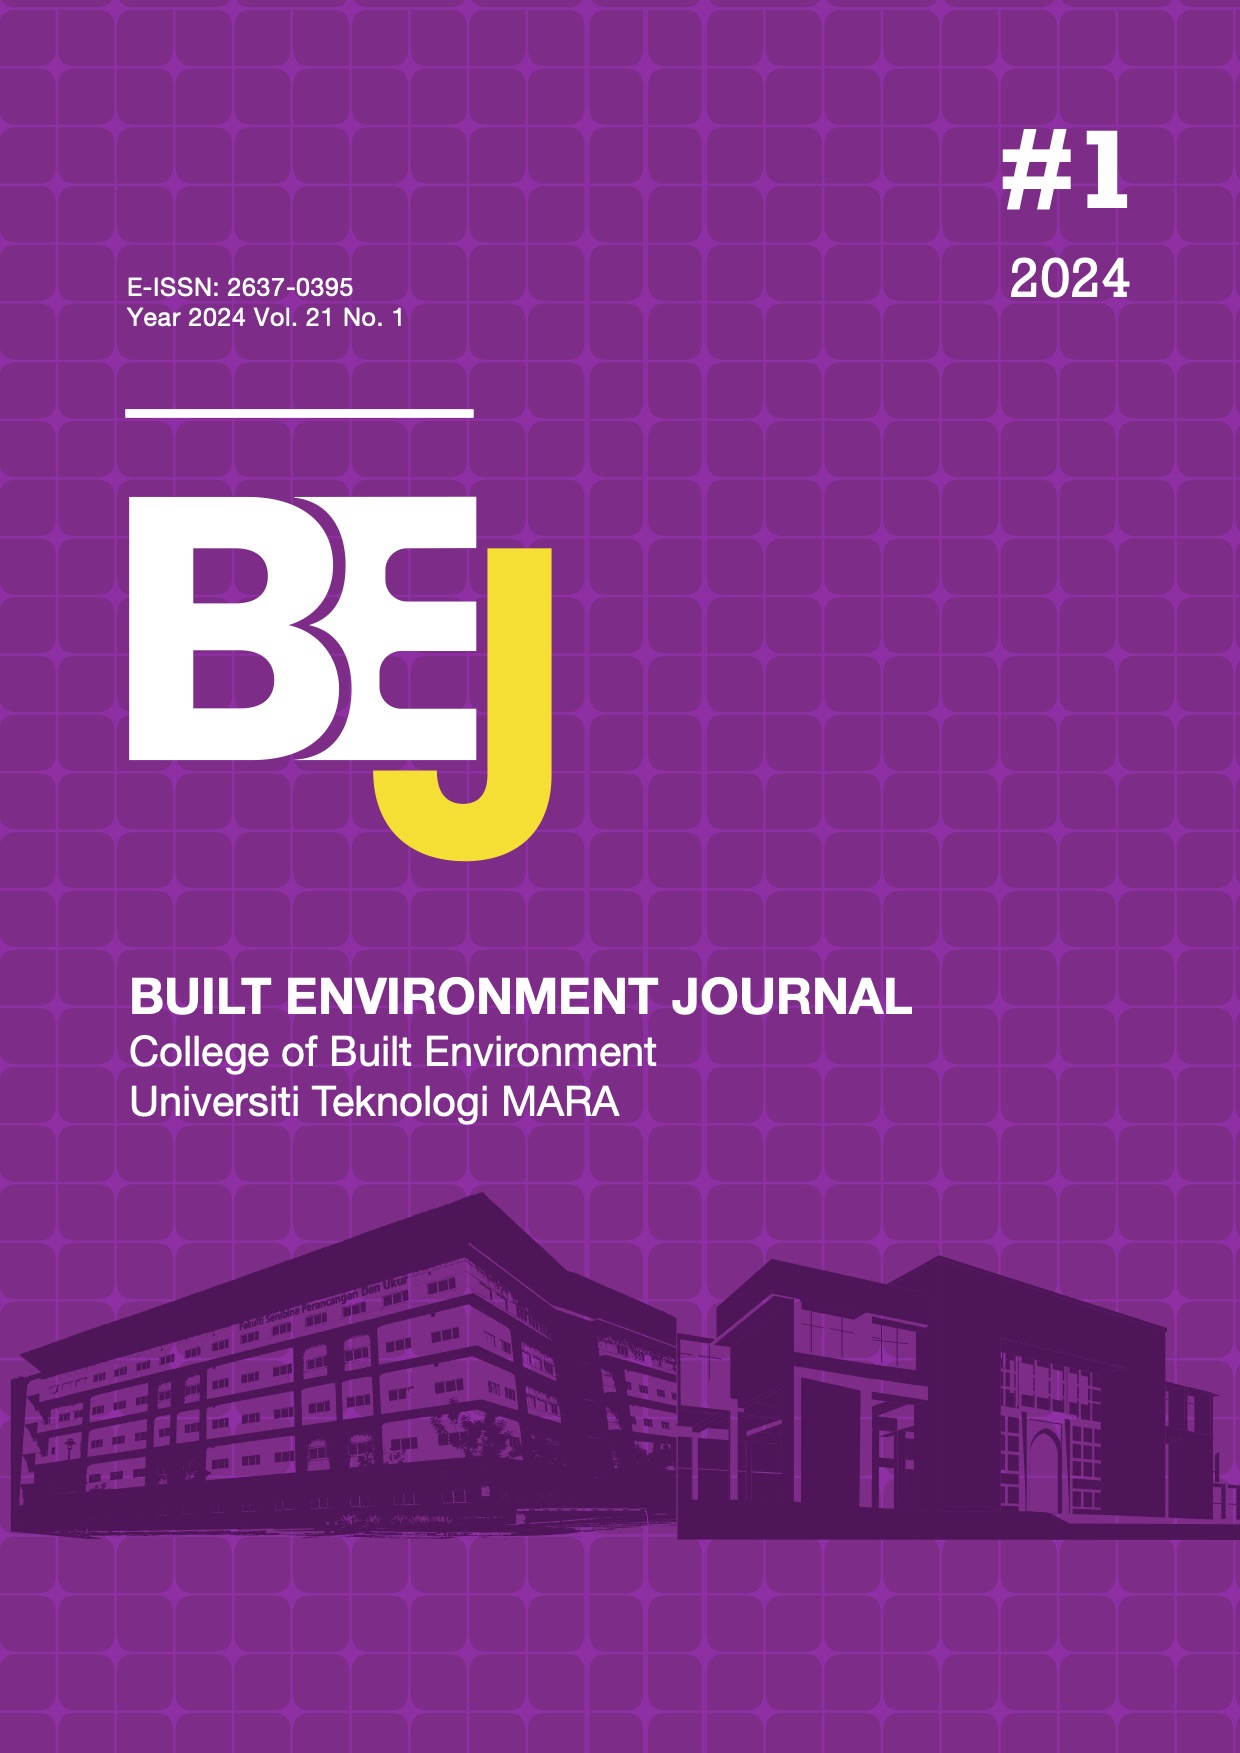 BEJ frontpage 2024 Vol21 No1